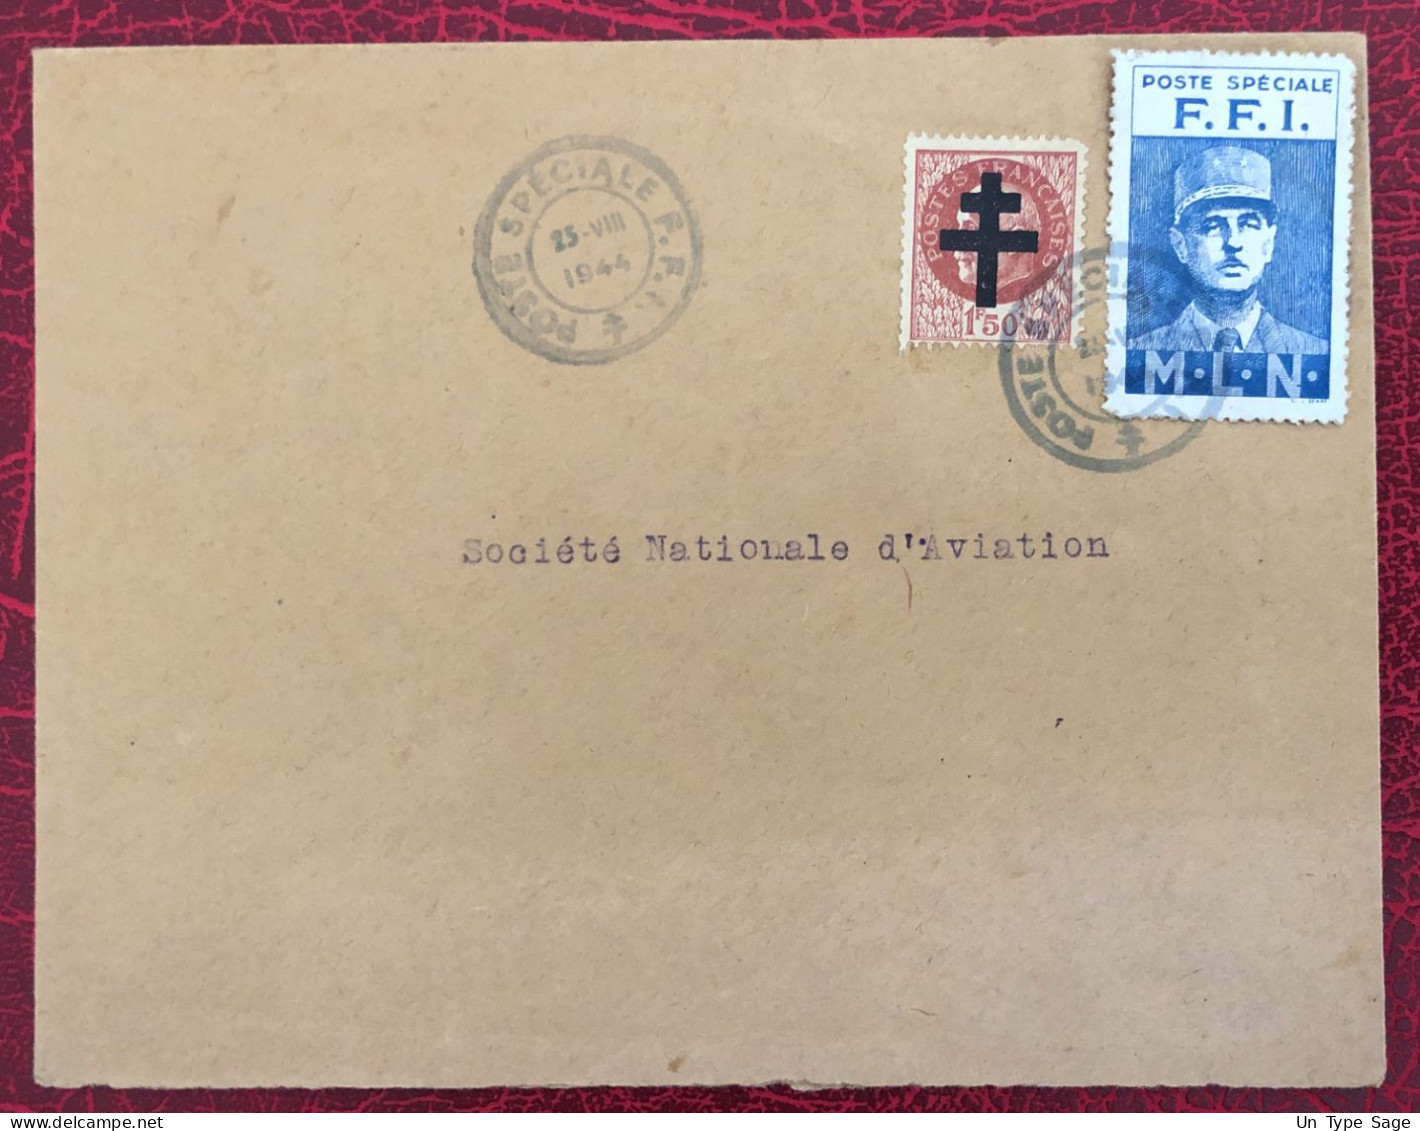 France, POSTE SPECIALE F.F.I. Sur Enveloppe - (B3629) - 2. Weltkrieg 1939-1945